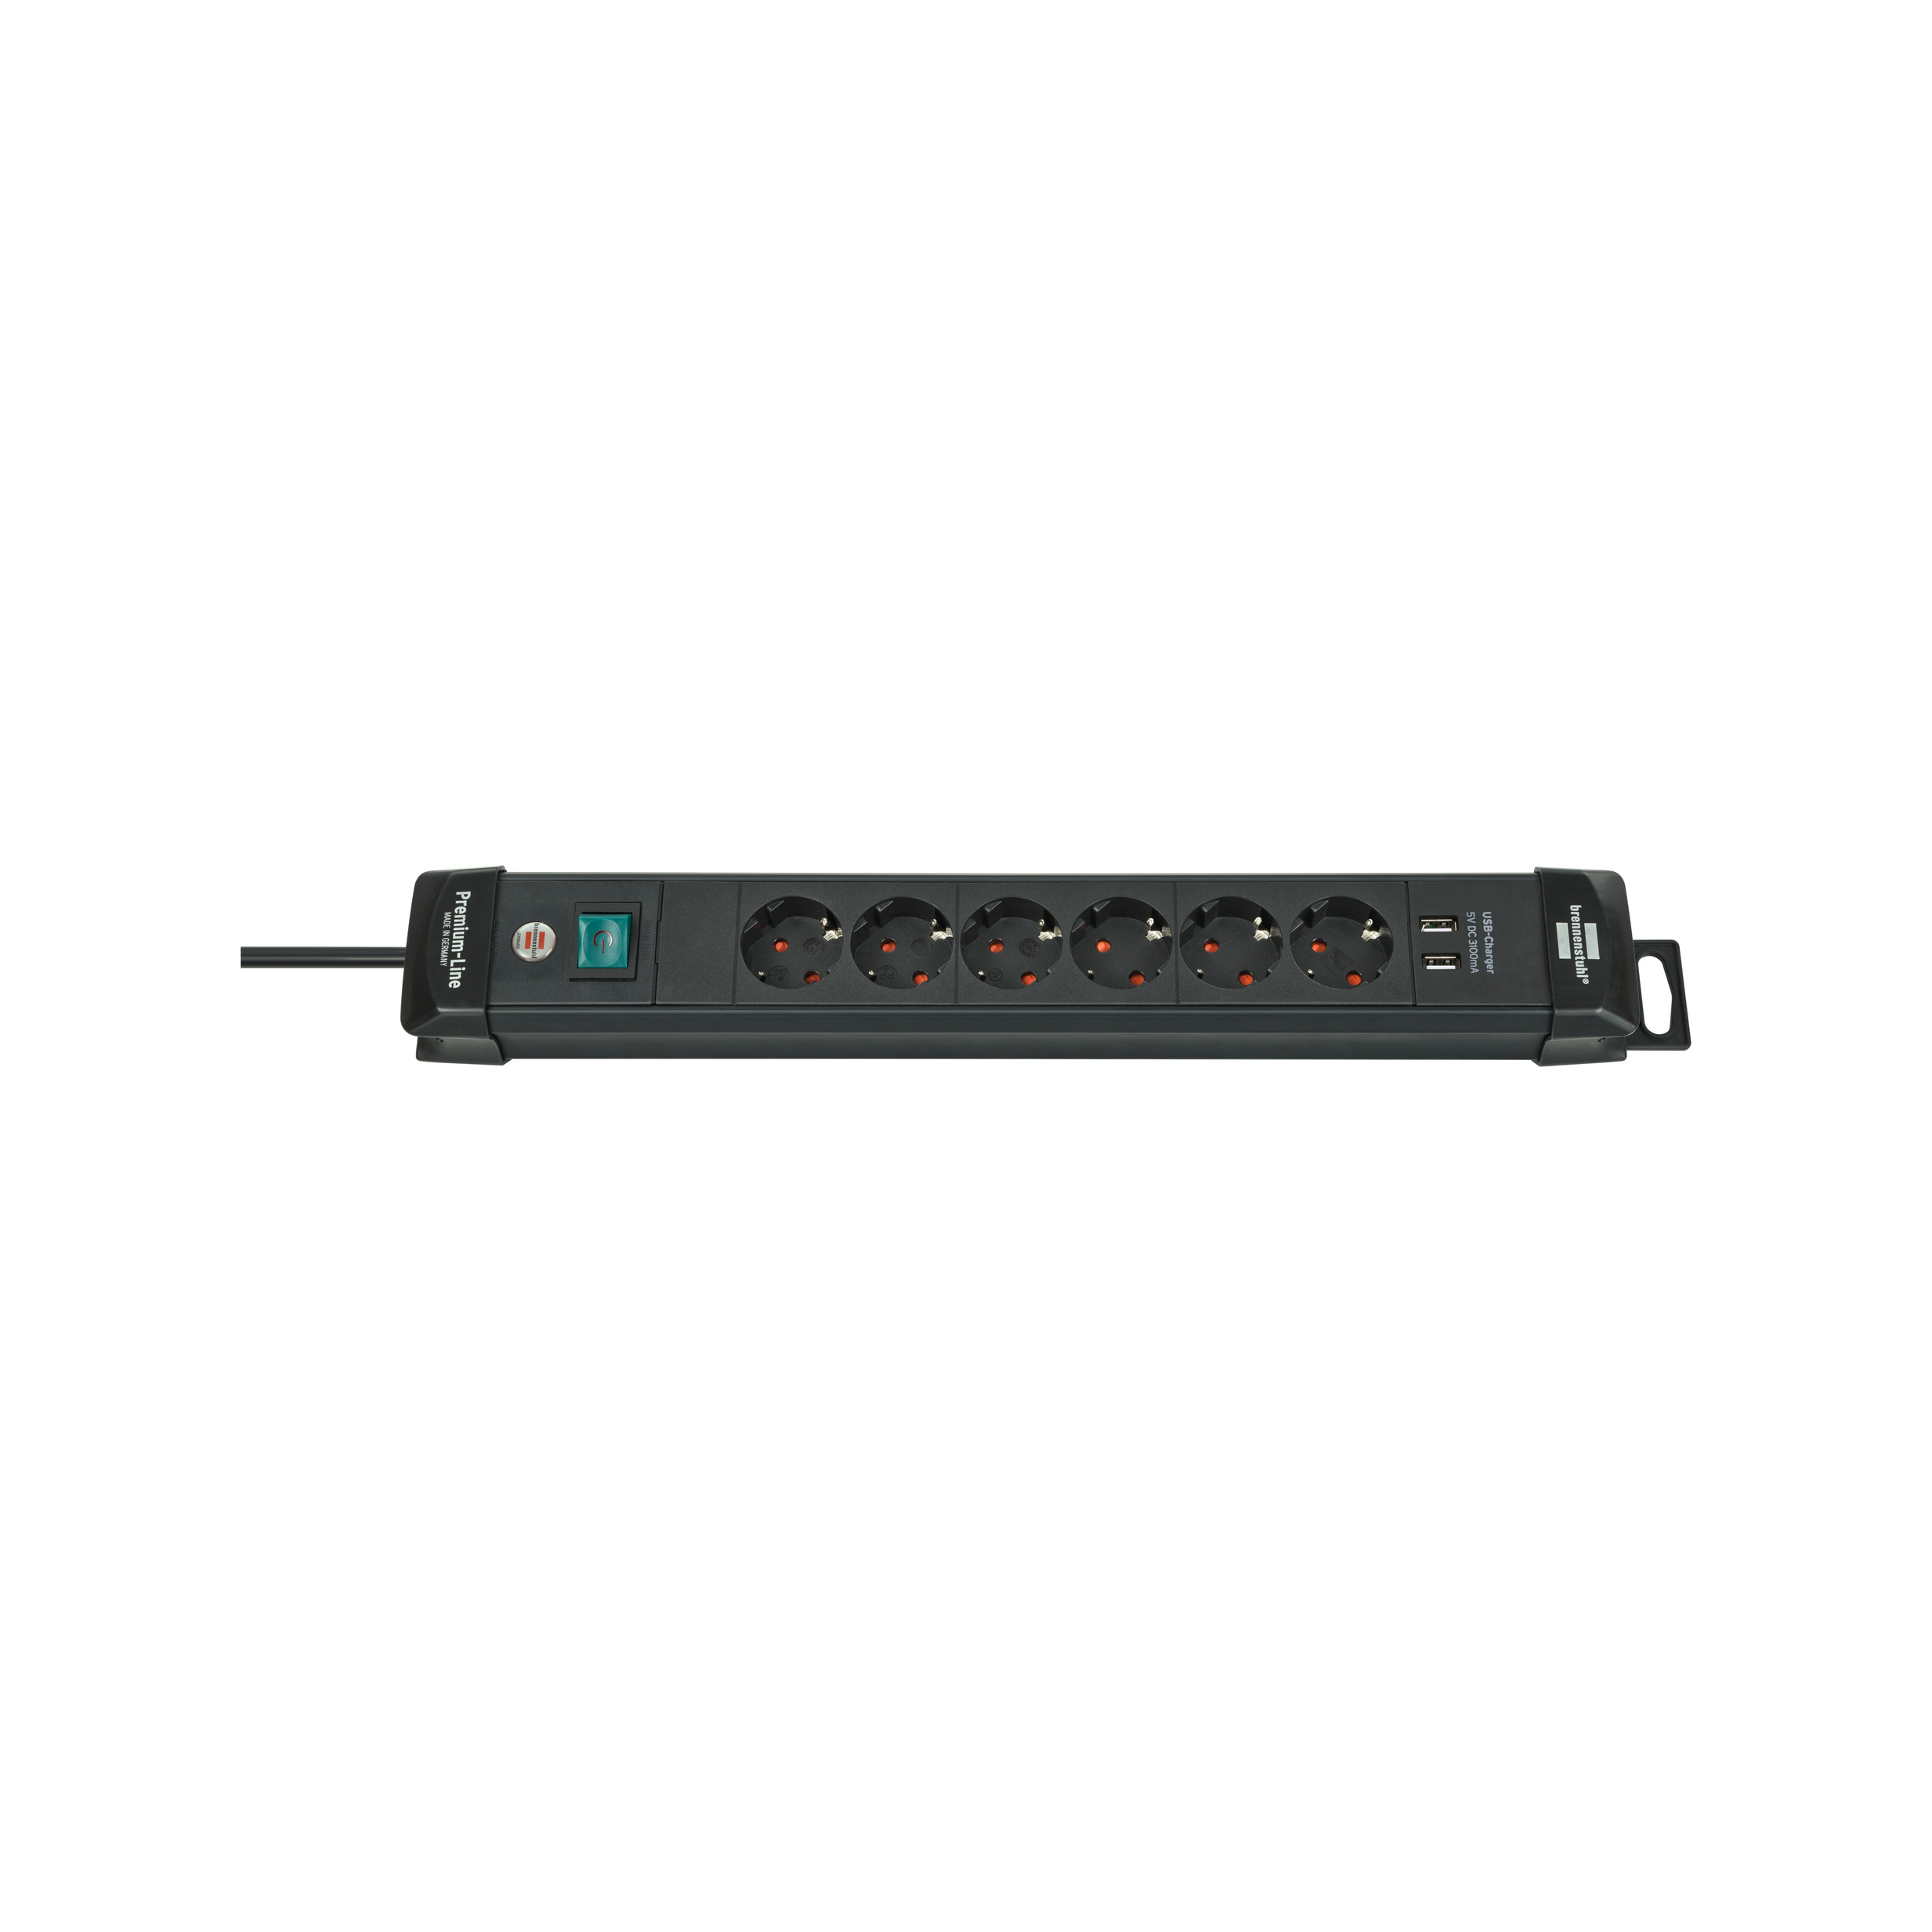 Удлинитель Brennenstuhl Premium-Line 6 розеток 2 USB кабель 3 м H05VV-F 3G1,5 черный IP20 1951160602